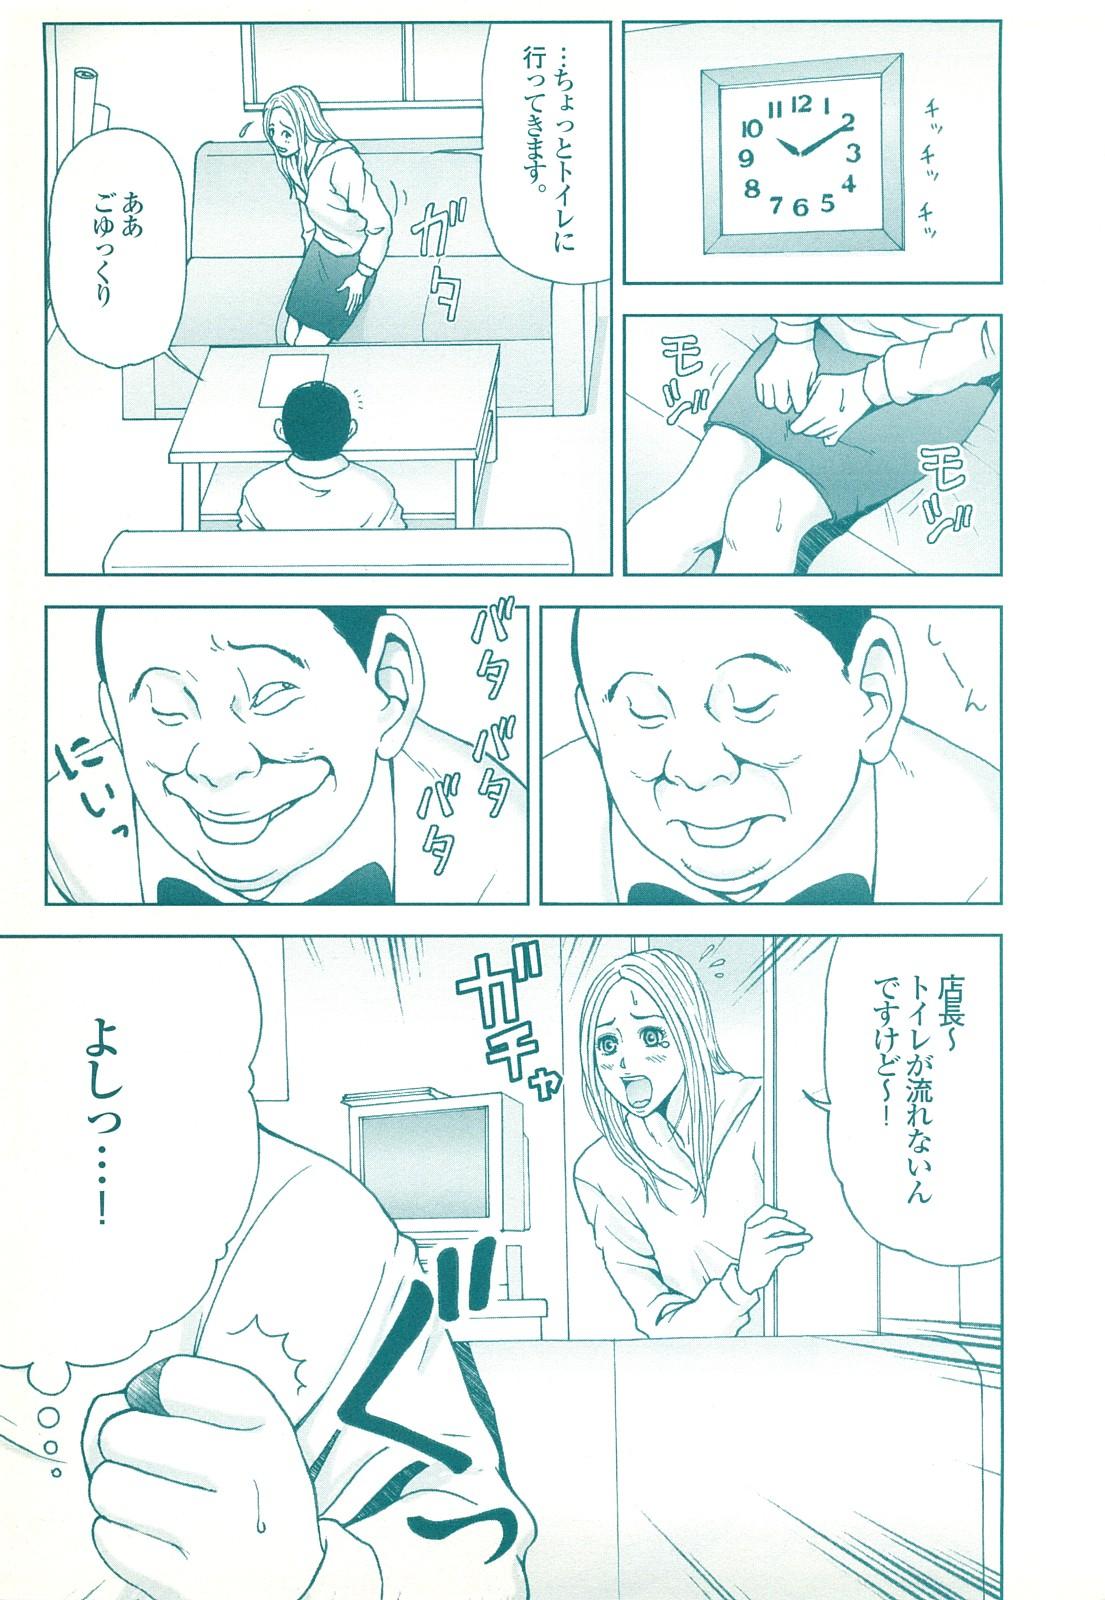 コミック裏モノJAPAN Vol.18 今井のりたつスペシャル号 188